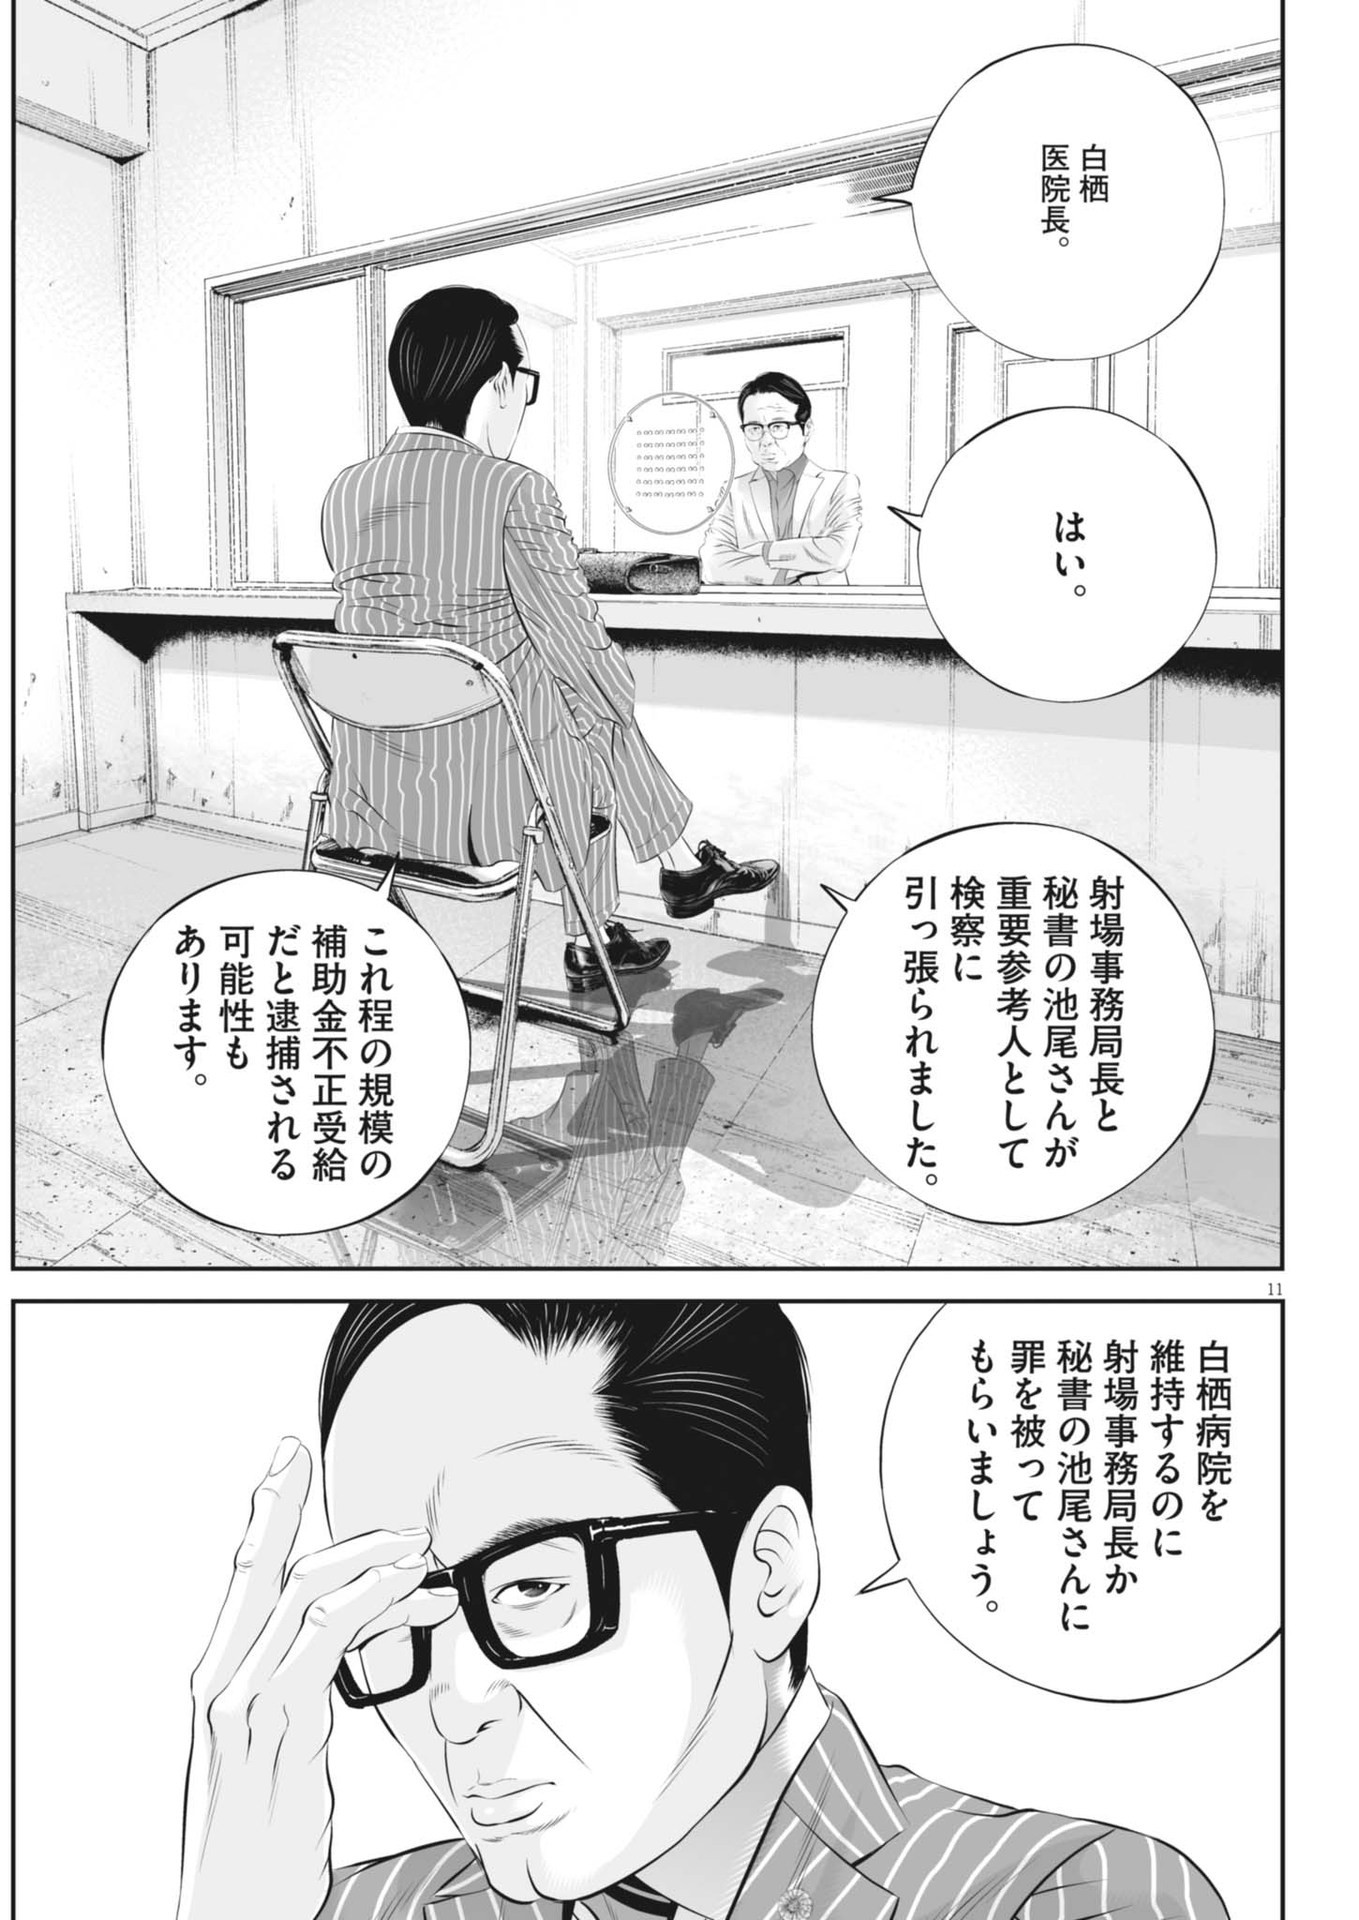 Kujou no Taizai - Chapter 101 - Page 11